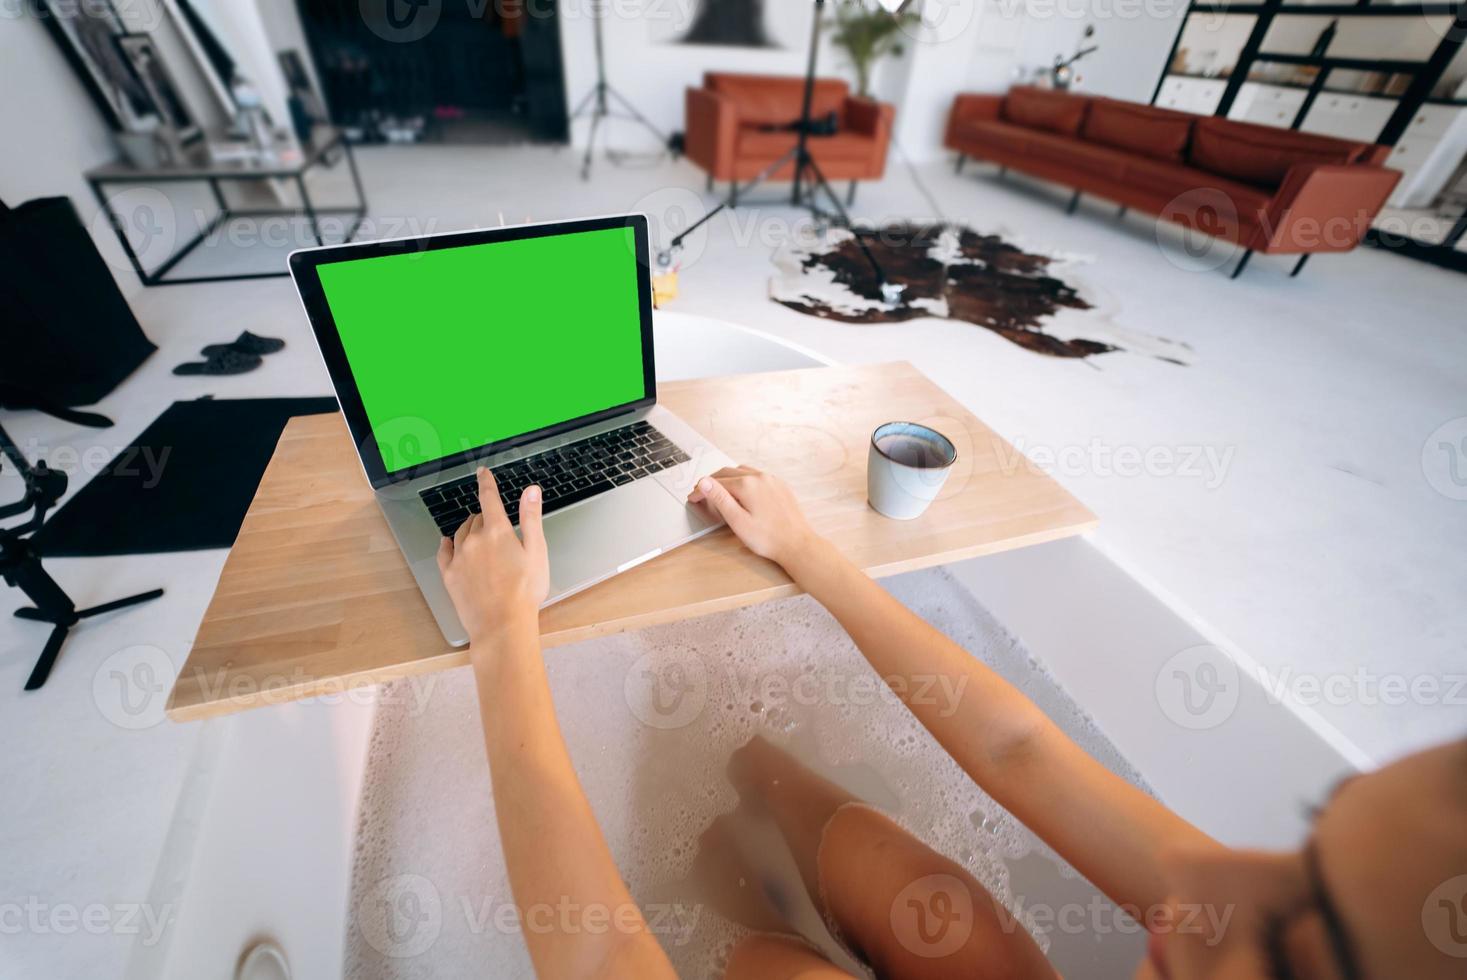 jeune femme travaillant sur un ordinateur portable tout en prenant une baignoire photo